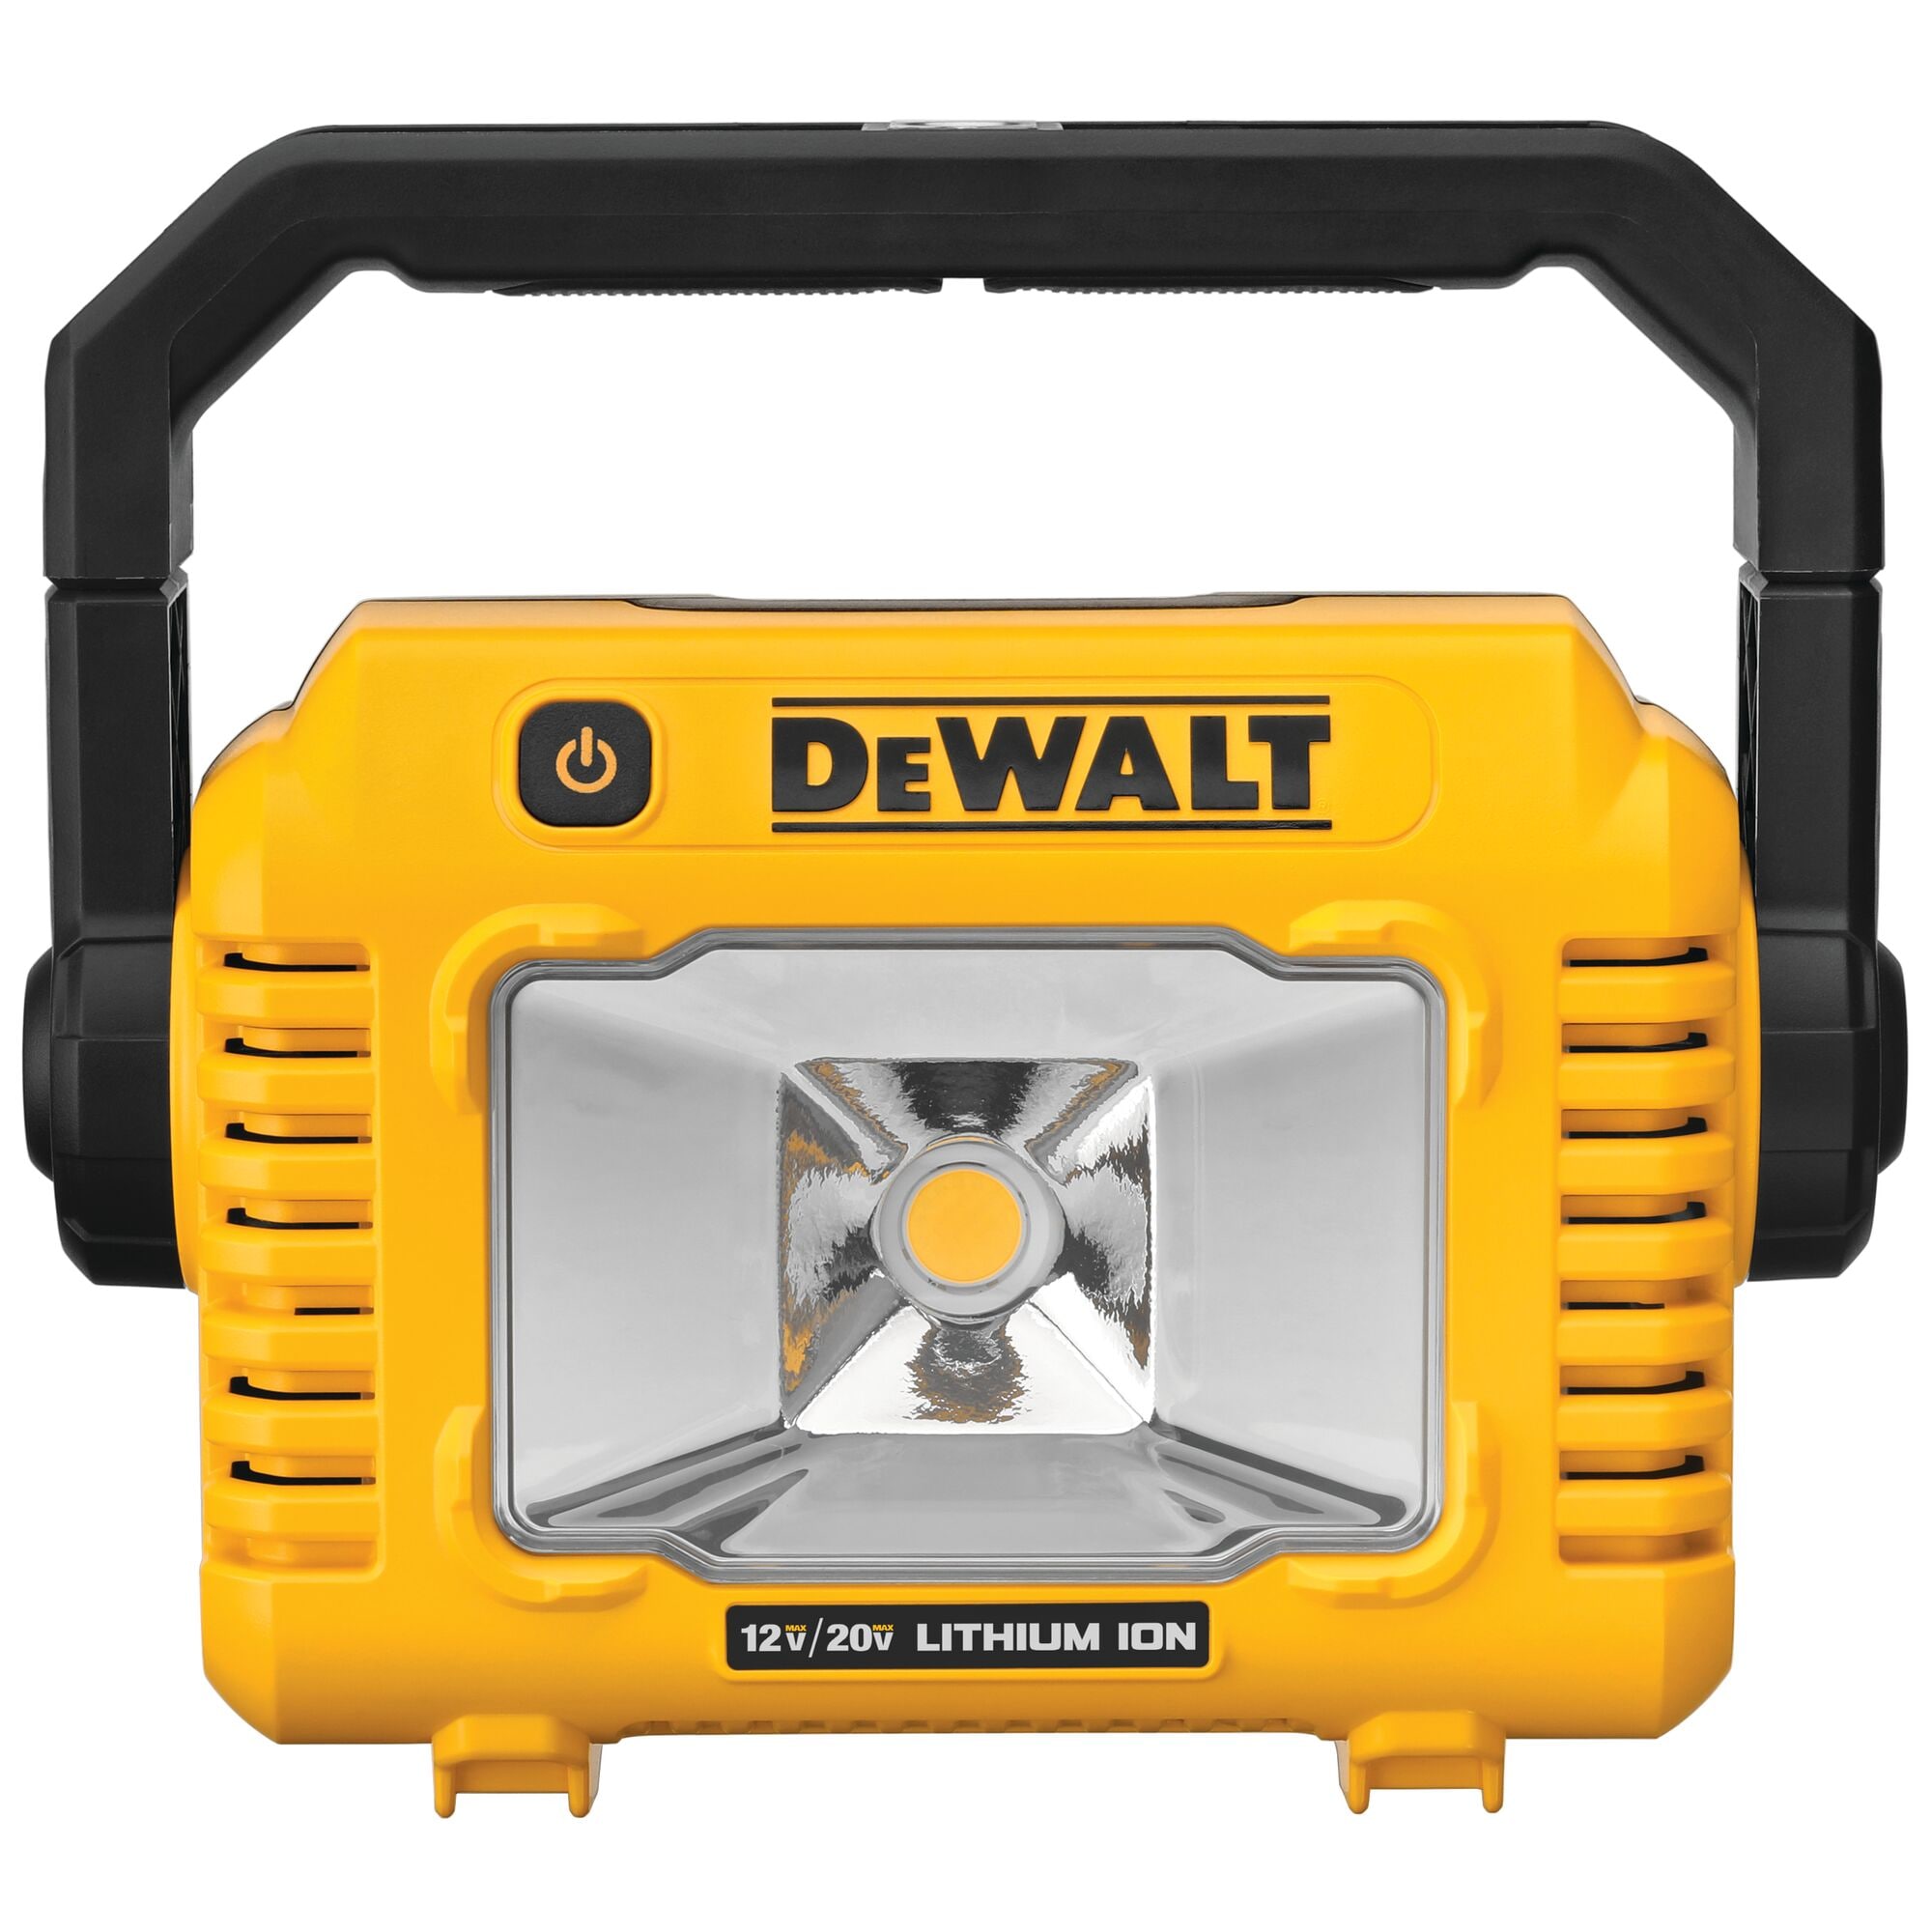 Cordless LED Work Light for Dewalt 18v 20v Battery, 48W 4800Lumens  Underhood Work Light with USB & Type-C Charging Port for Dewalt 20v Tools